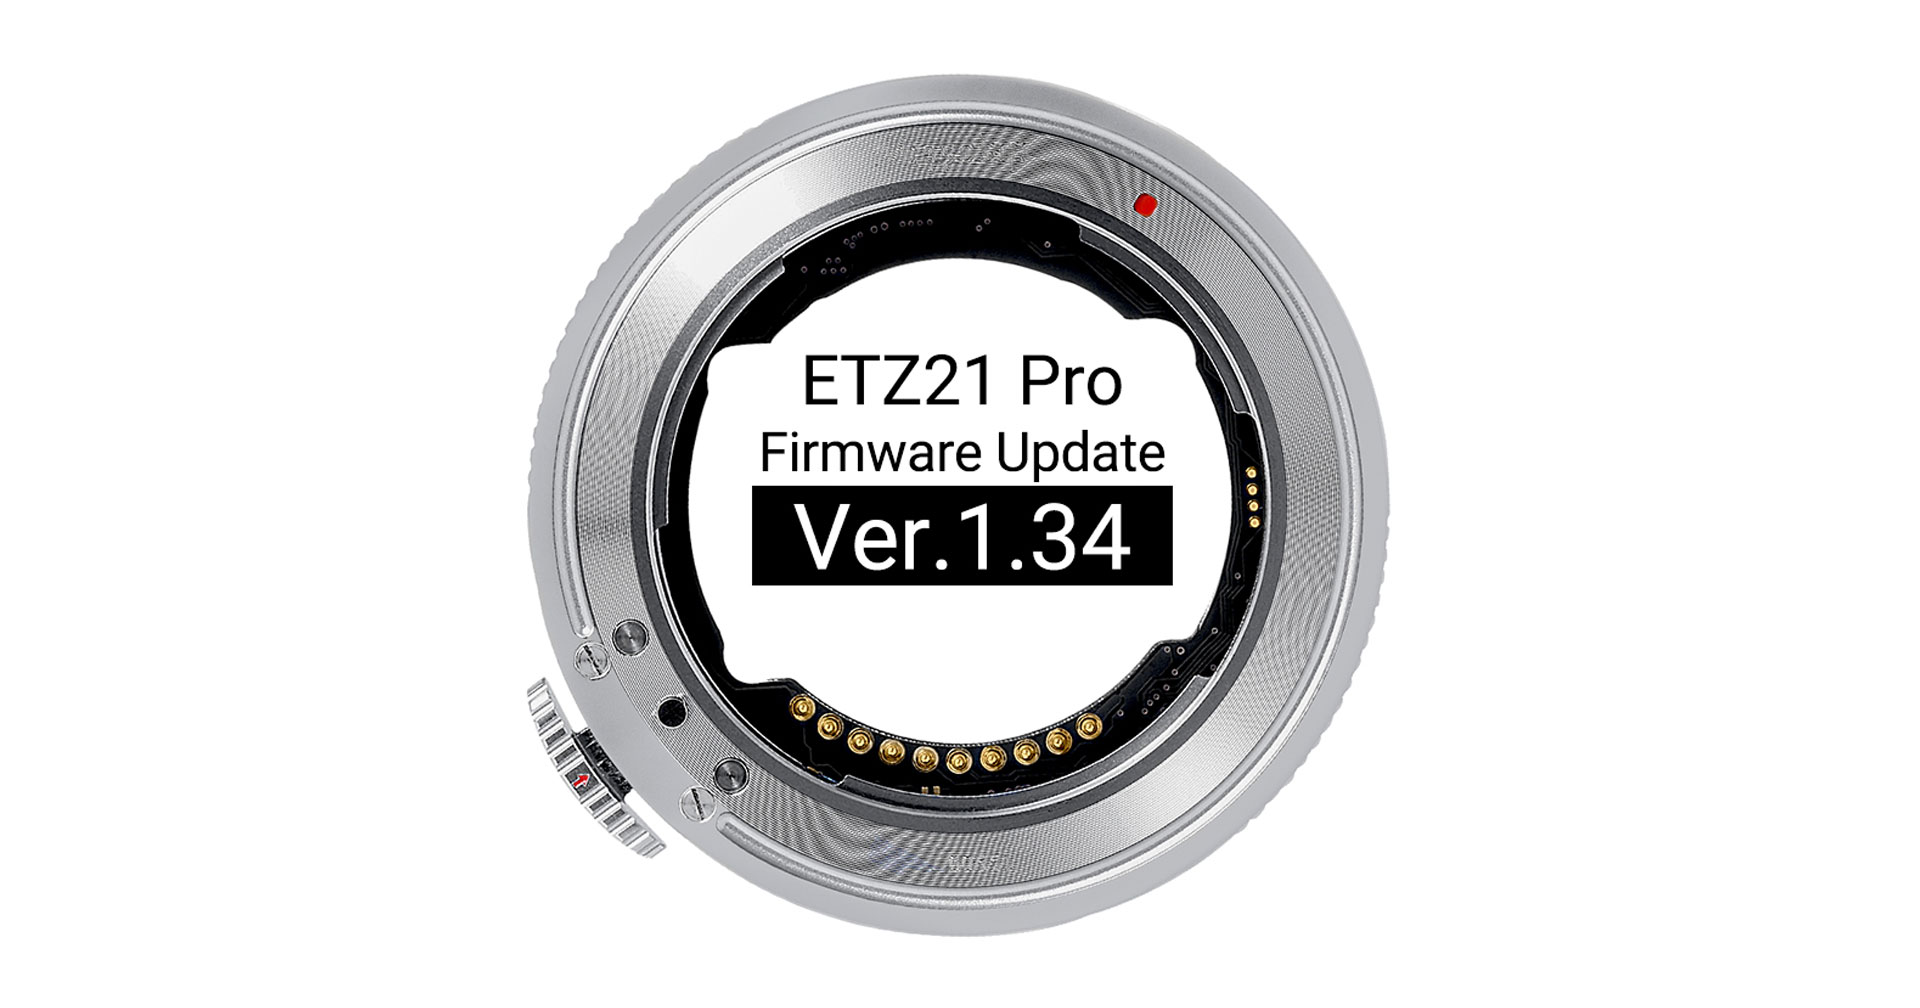 เฟิร์มแวร์ใหม่ Megadap ETZ21 Pro แก้ปัญหาเมื่อใช้เลนส์ซูมไฟฟ้า